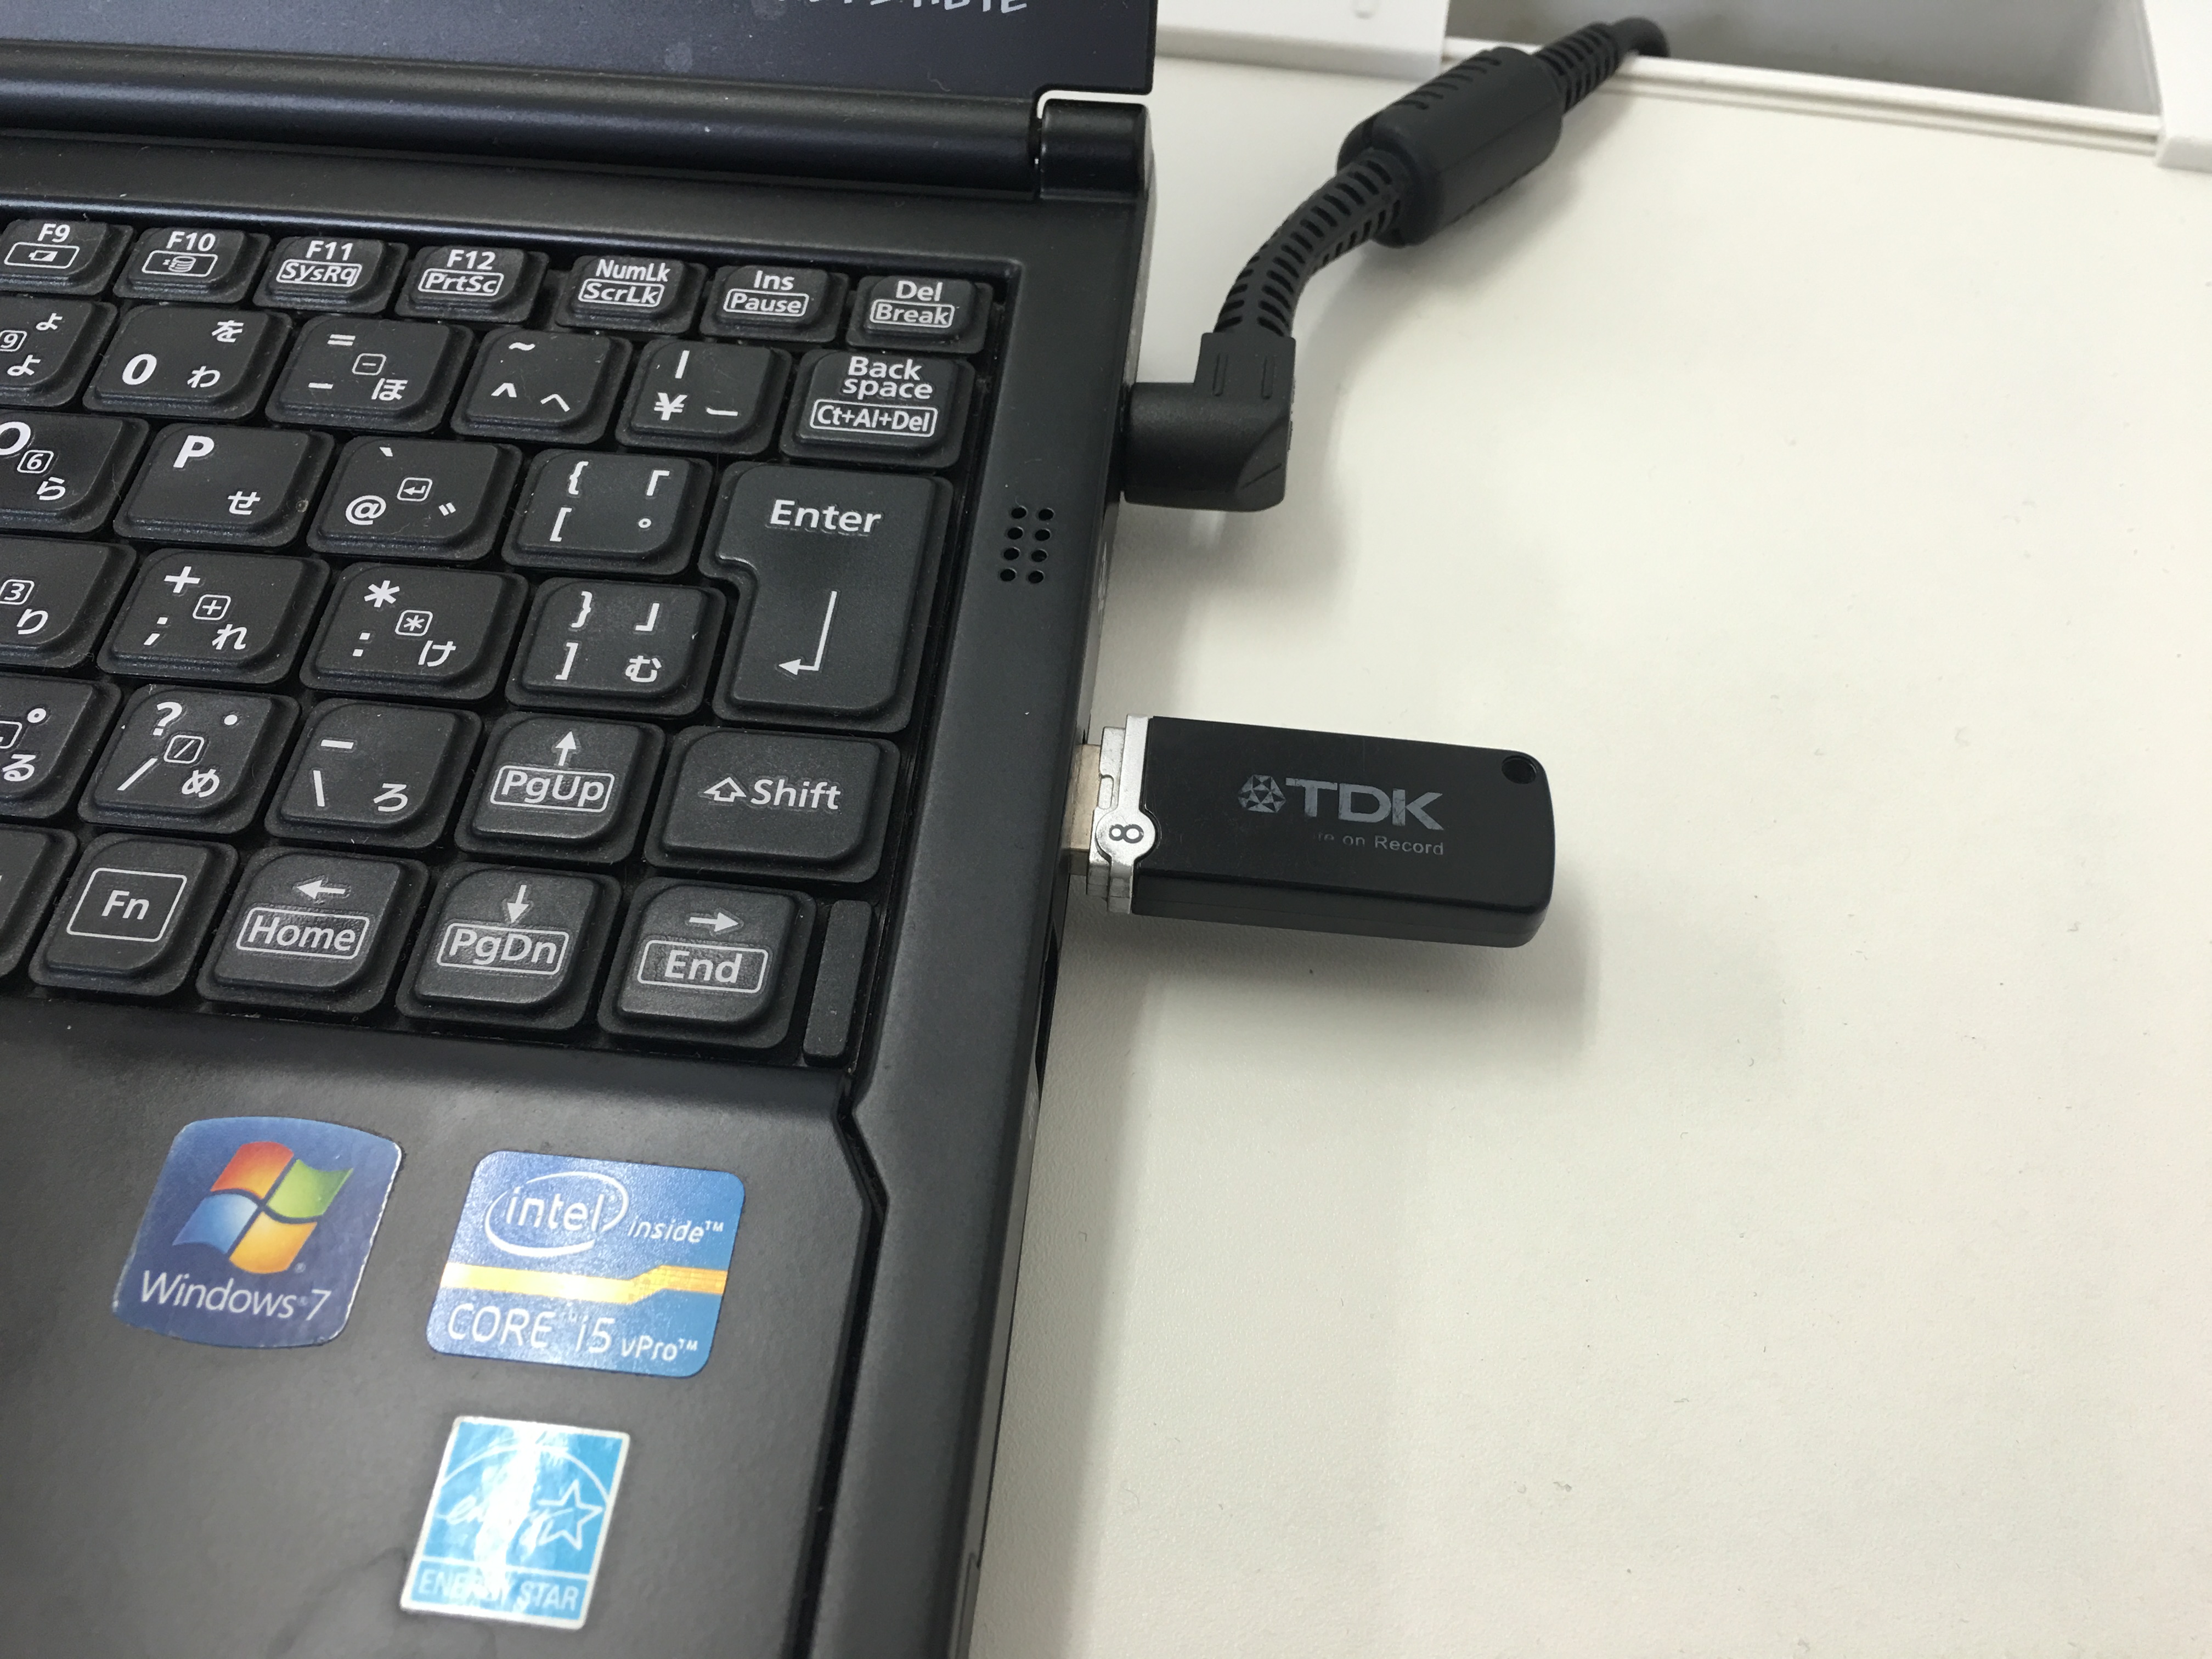 USBフラッシュメモリ